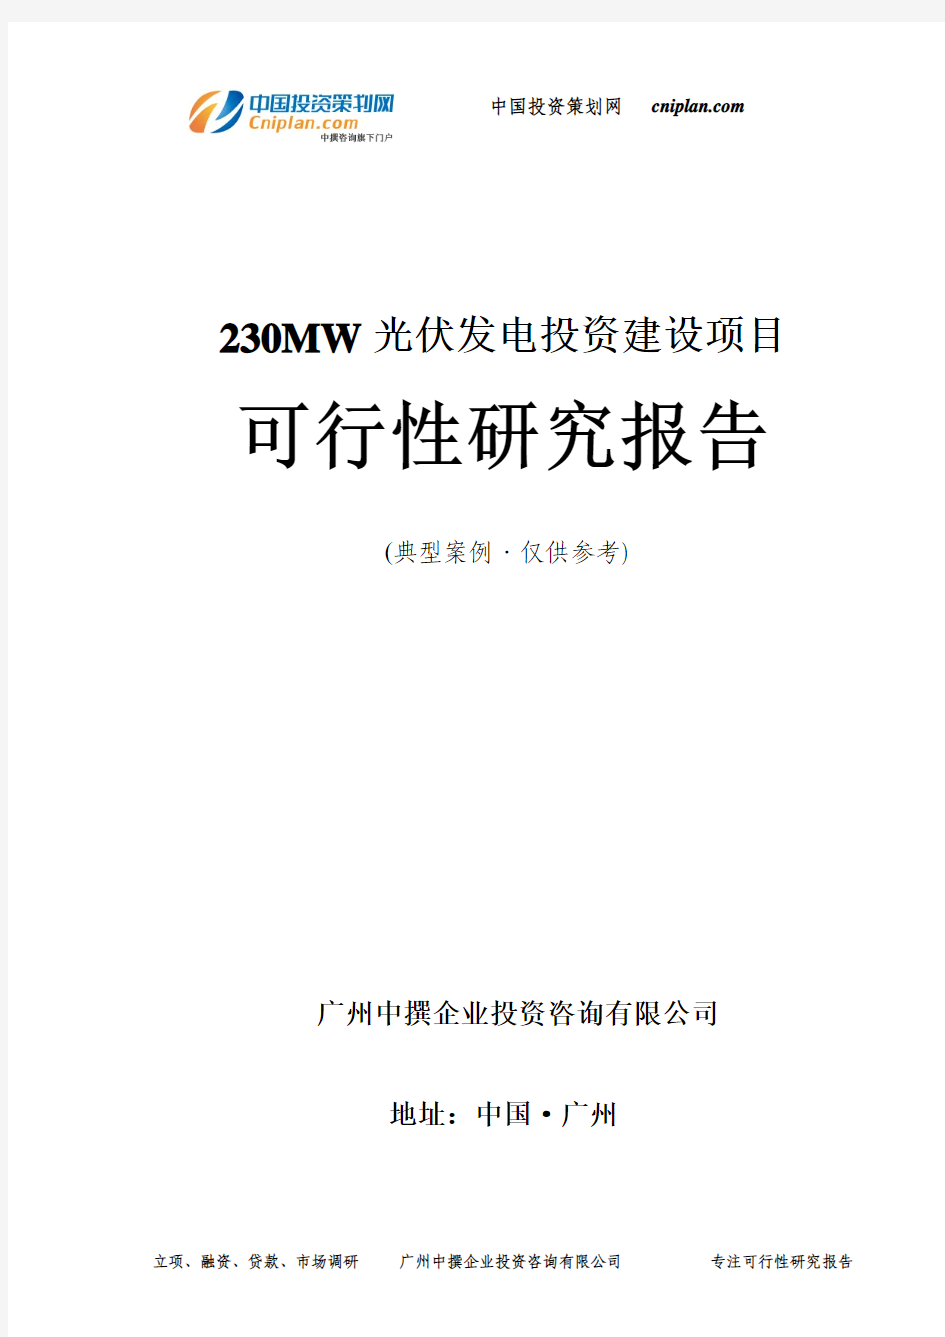 230MW光伏发电投资建设项目可行性研究报告-广州中撰咨询